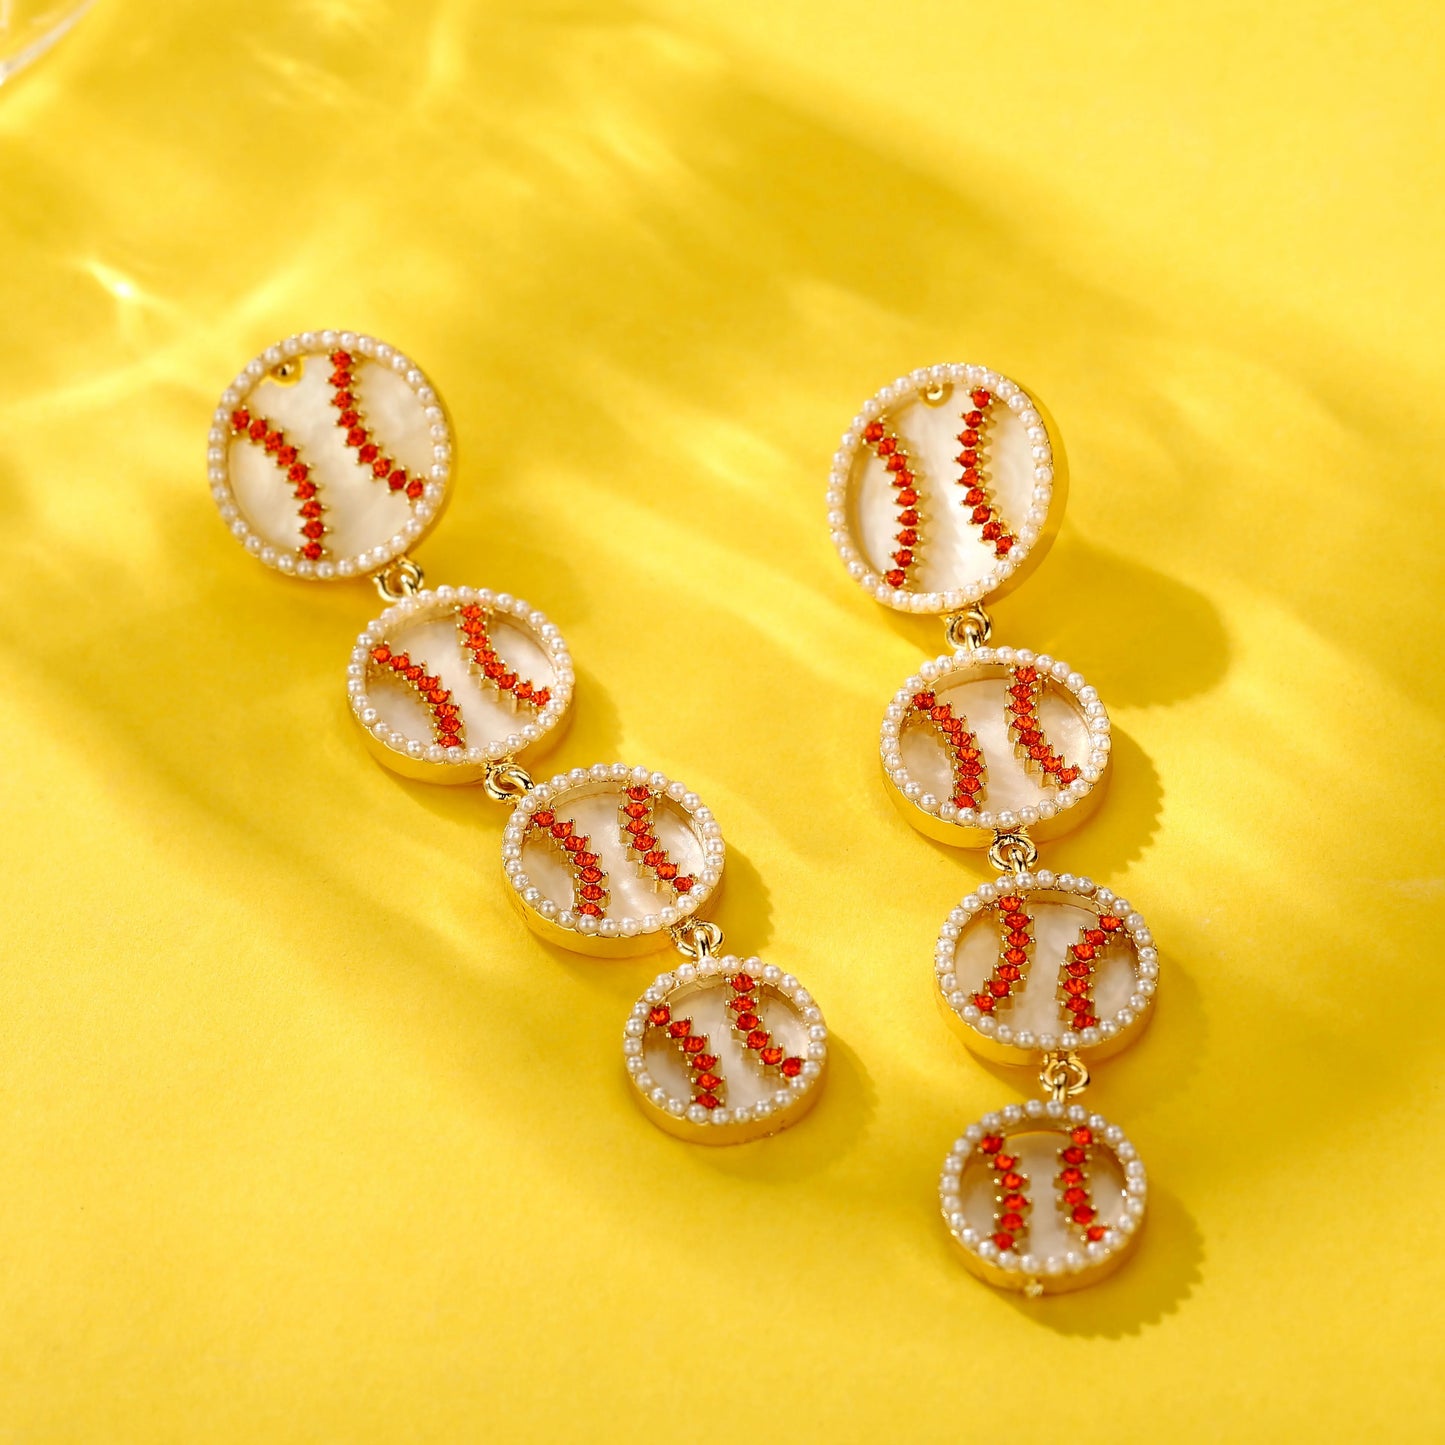 Beisbol Earrings